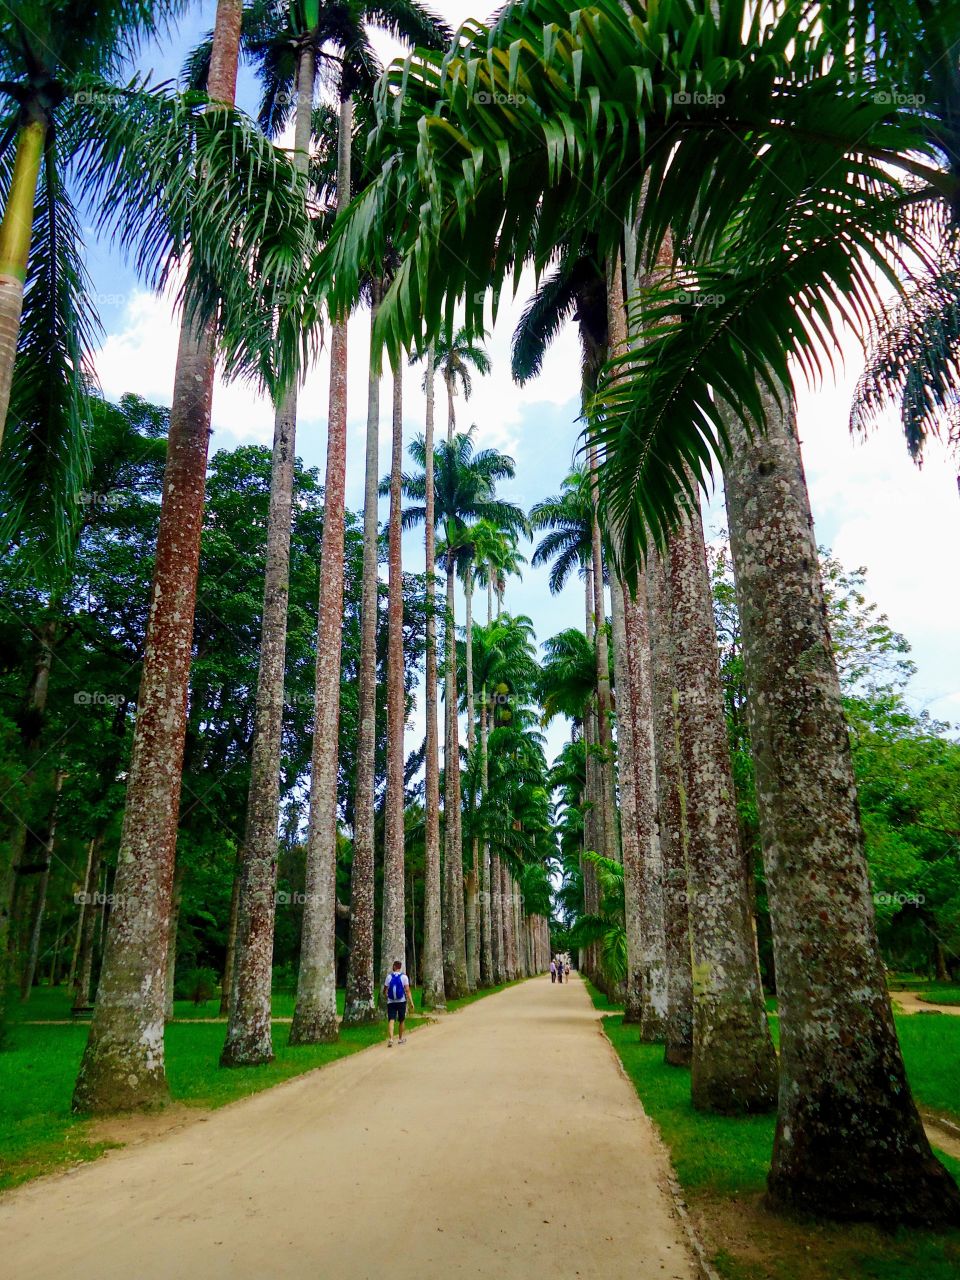 Imperial Palm Trees - Rio de Janeiro Botanical Garden